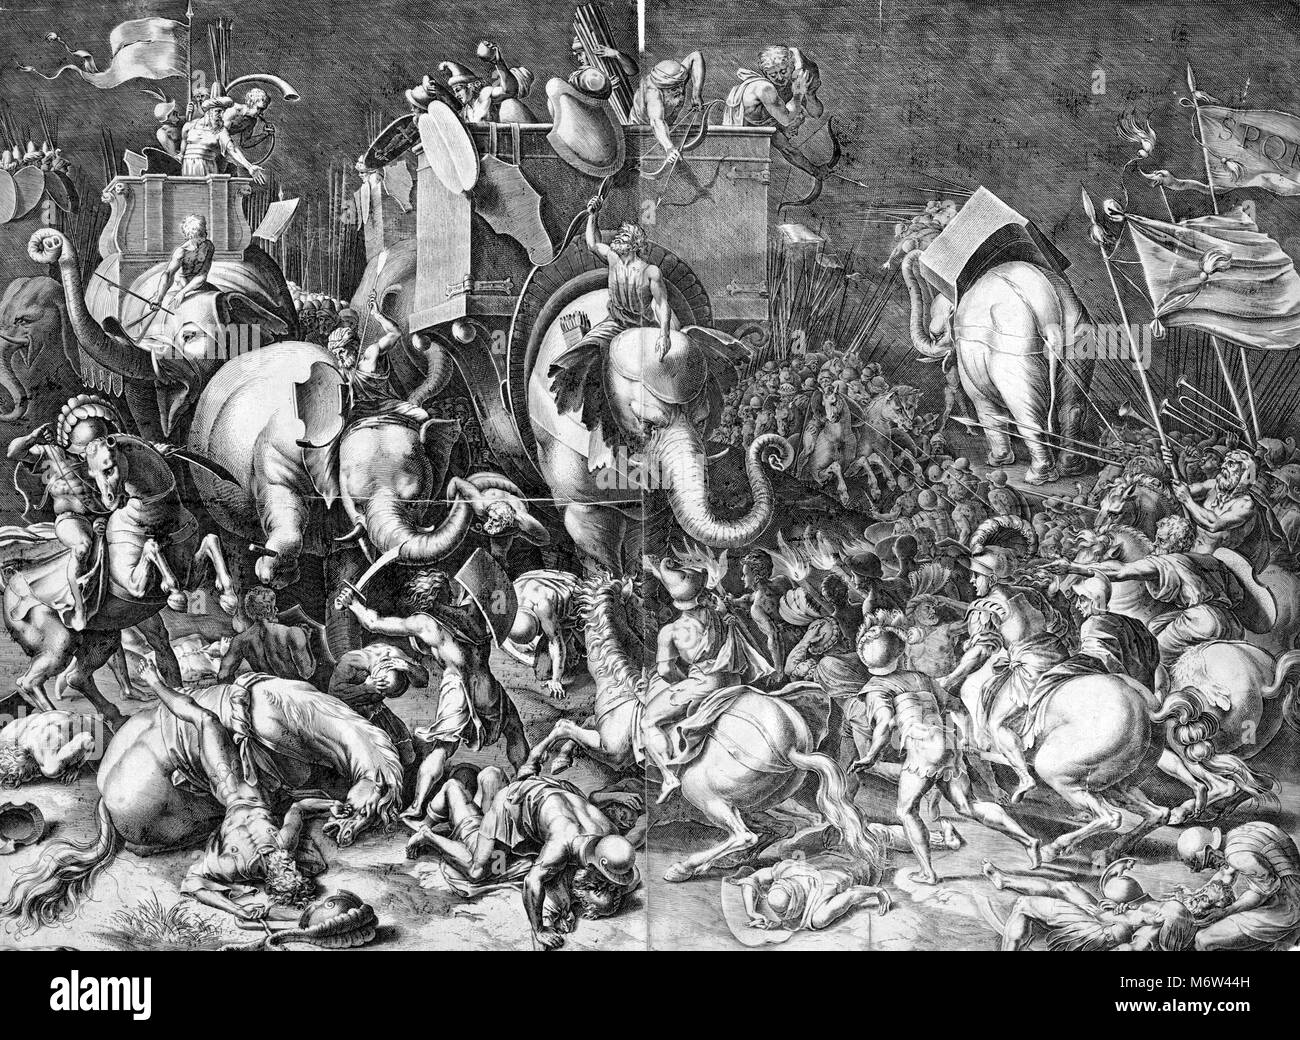 Incisione raffigurante la battaglia di Zama - combattuta nel 202 A.C. nei pressi di Zama (Tunisia) - che ha segnato la fine della Seconda Guerra Punica. Incisione da un dipinto di Cornelis Cort (1533-1578). La foto mostra Scipione l'africano a cavallo con i soldati romani impegnare Annibale, cavalcate un elefante di guerra, durante la battaglia di Zama. Foto Stock